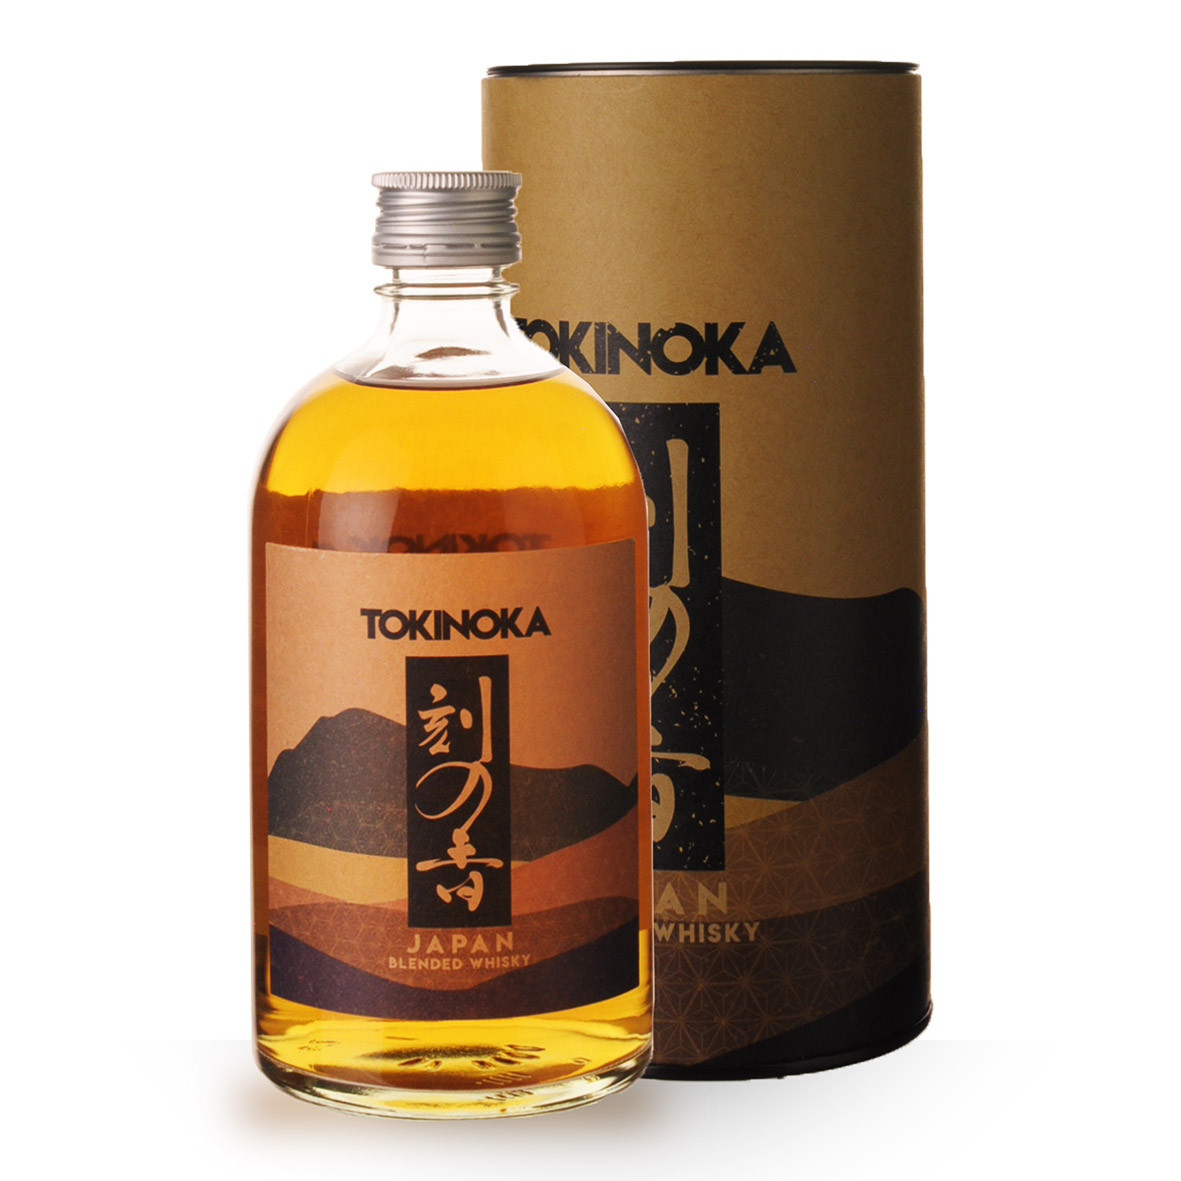 Whisky Japonais Akashi 50 cl - Achat/Vente de whisky japonais